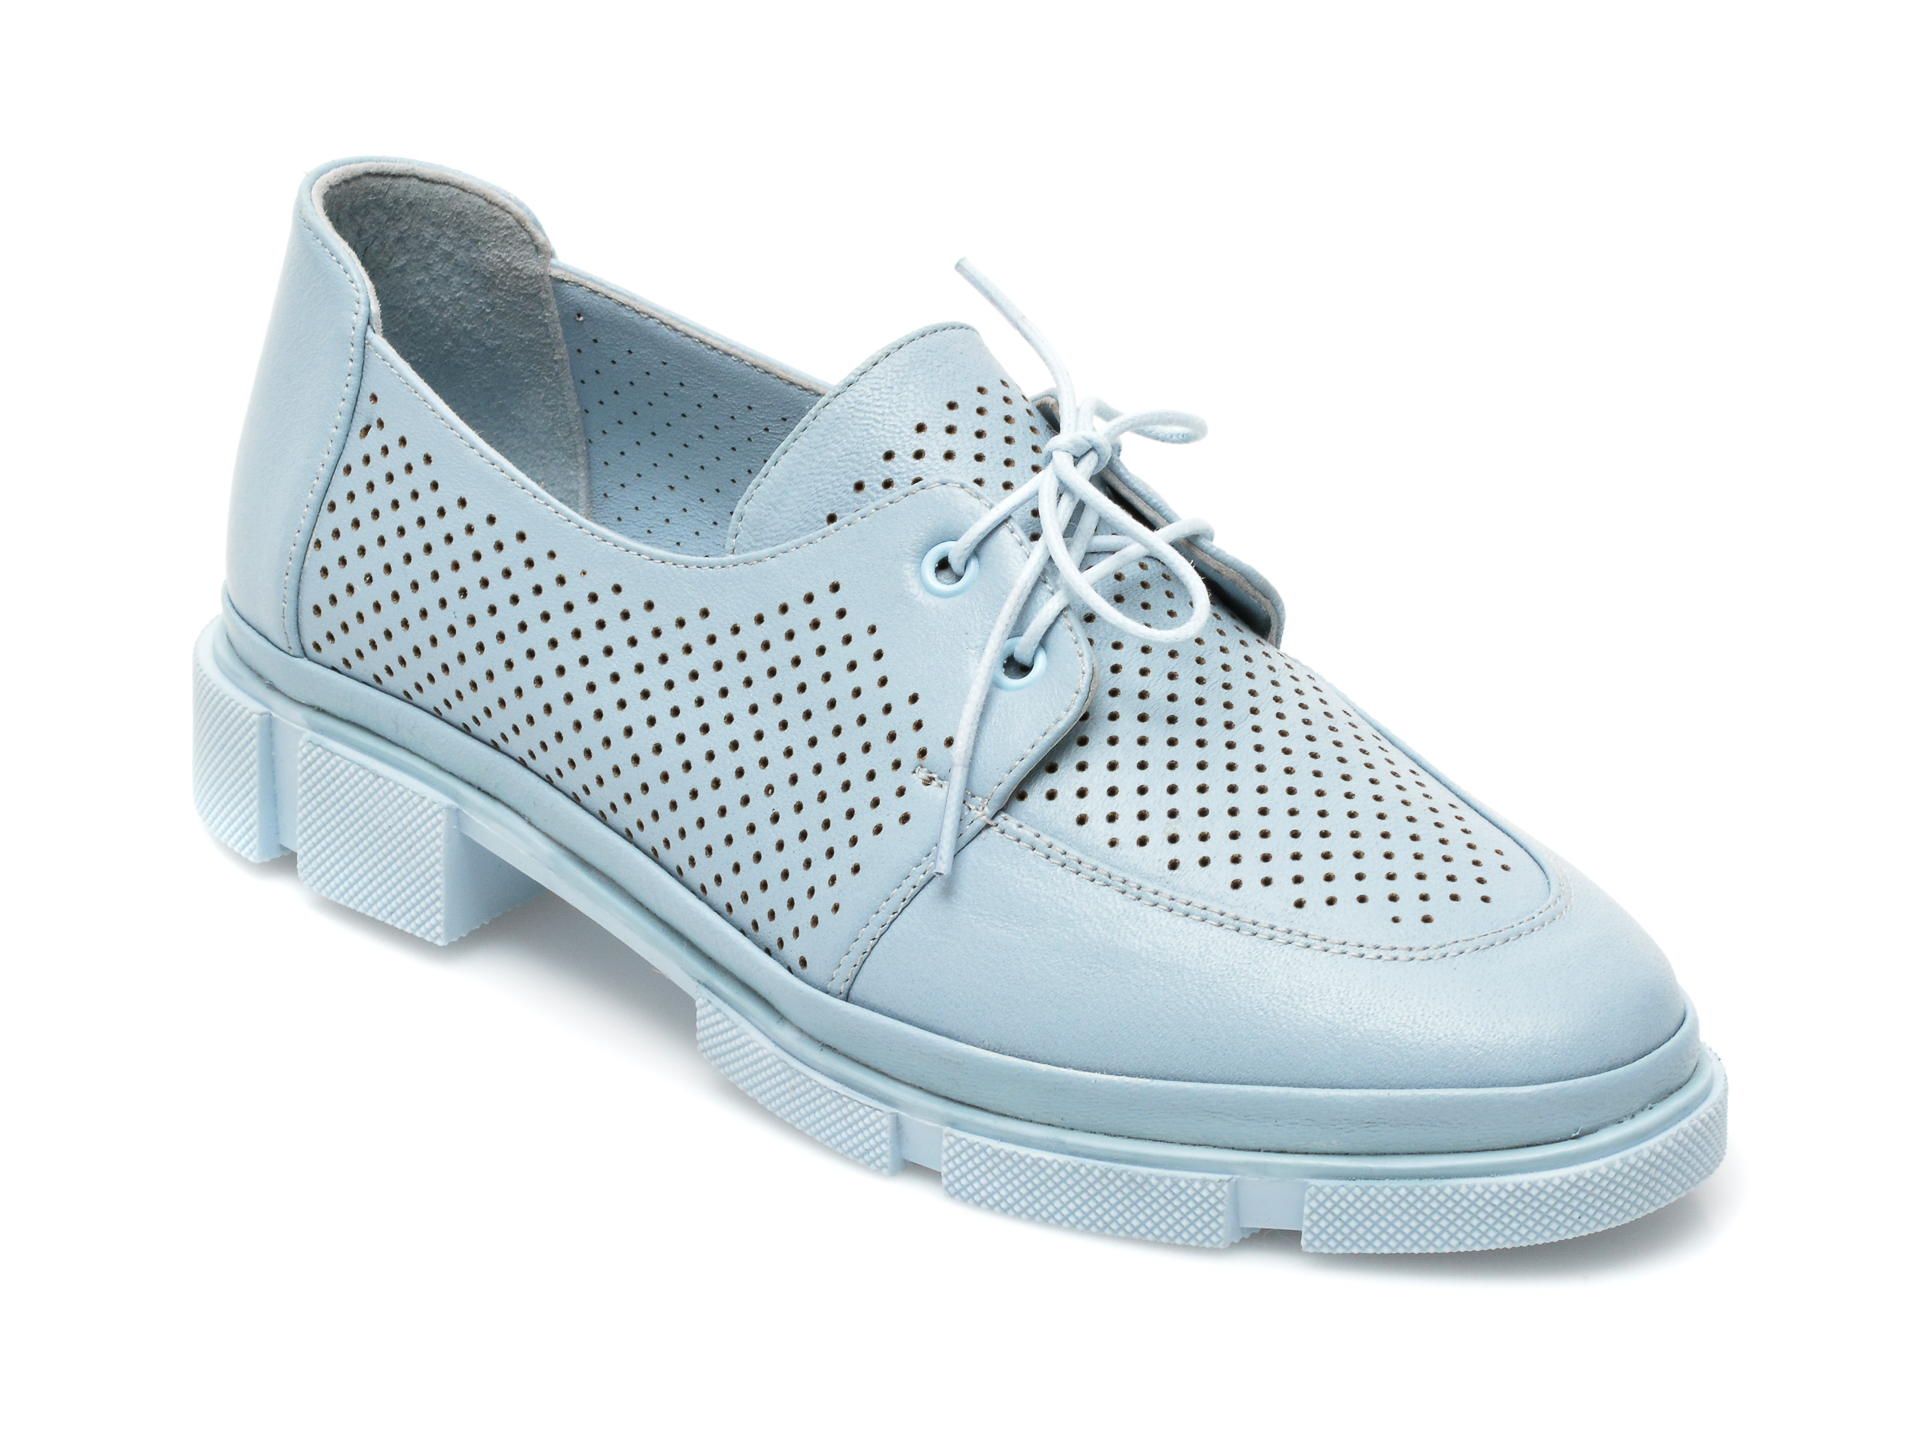 Pantofi ENTERSA albastri, MN107, din piele naturala